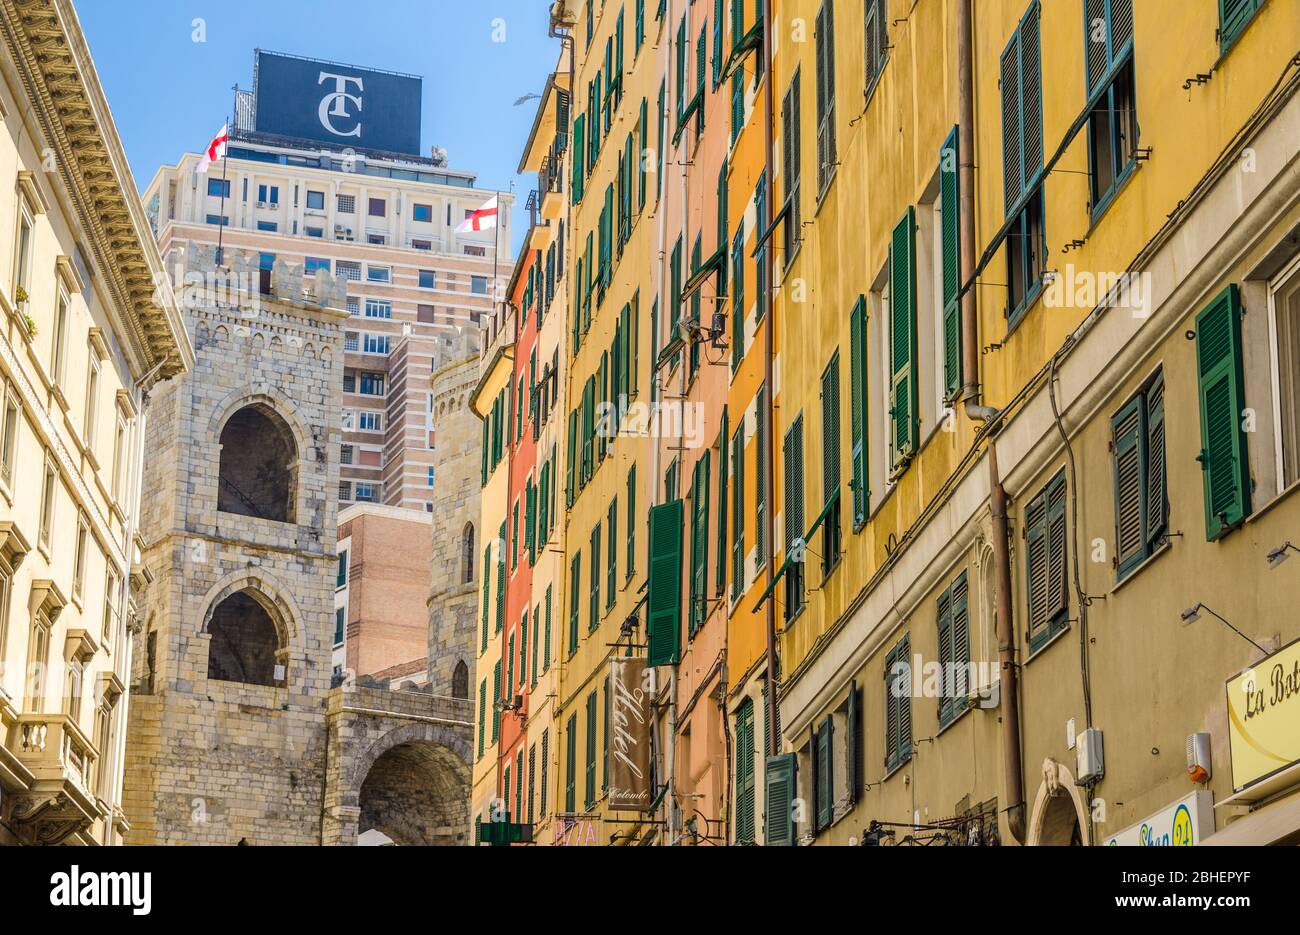 Génova, Italia, 11 de septiembre de 2018: Torre medieval Porta Soprana puerta, edificios coloridos con persianas en las ventanas, rascacielos moderno de fondo en el centro histórico de la vieja ciudad europea Génova, Liguria Foto de stock